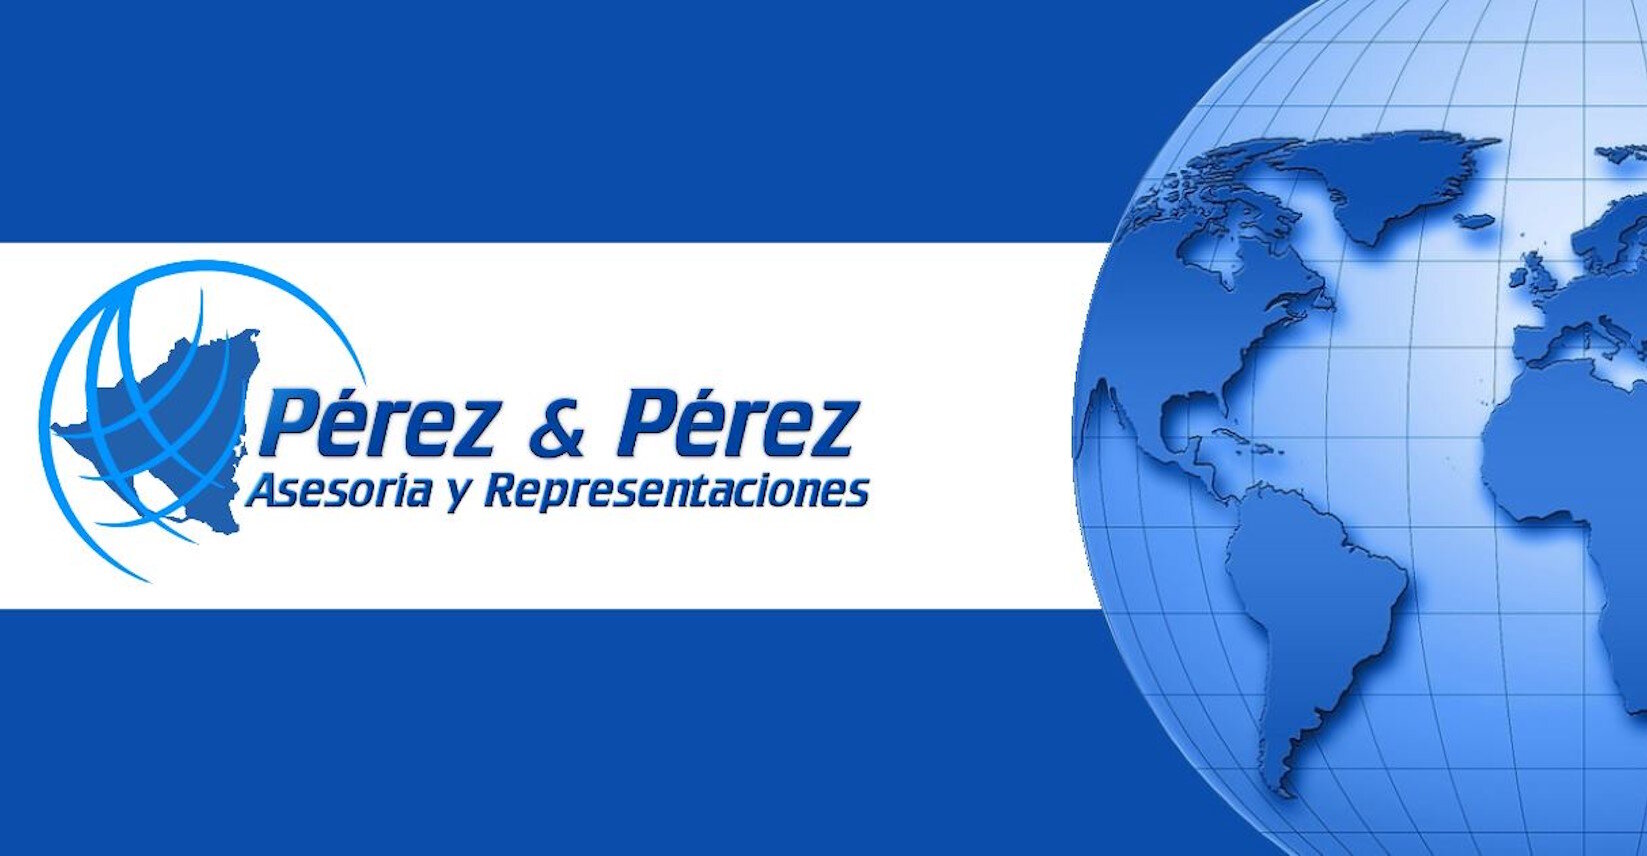 Pérez & Pérez - Asesoría y Representaciones cover photo